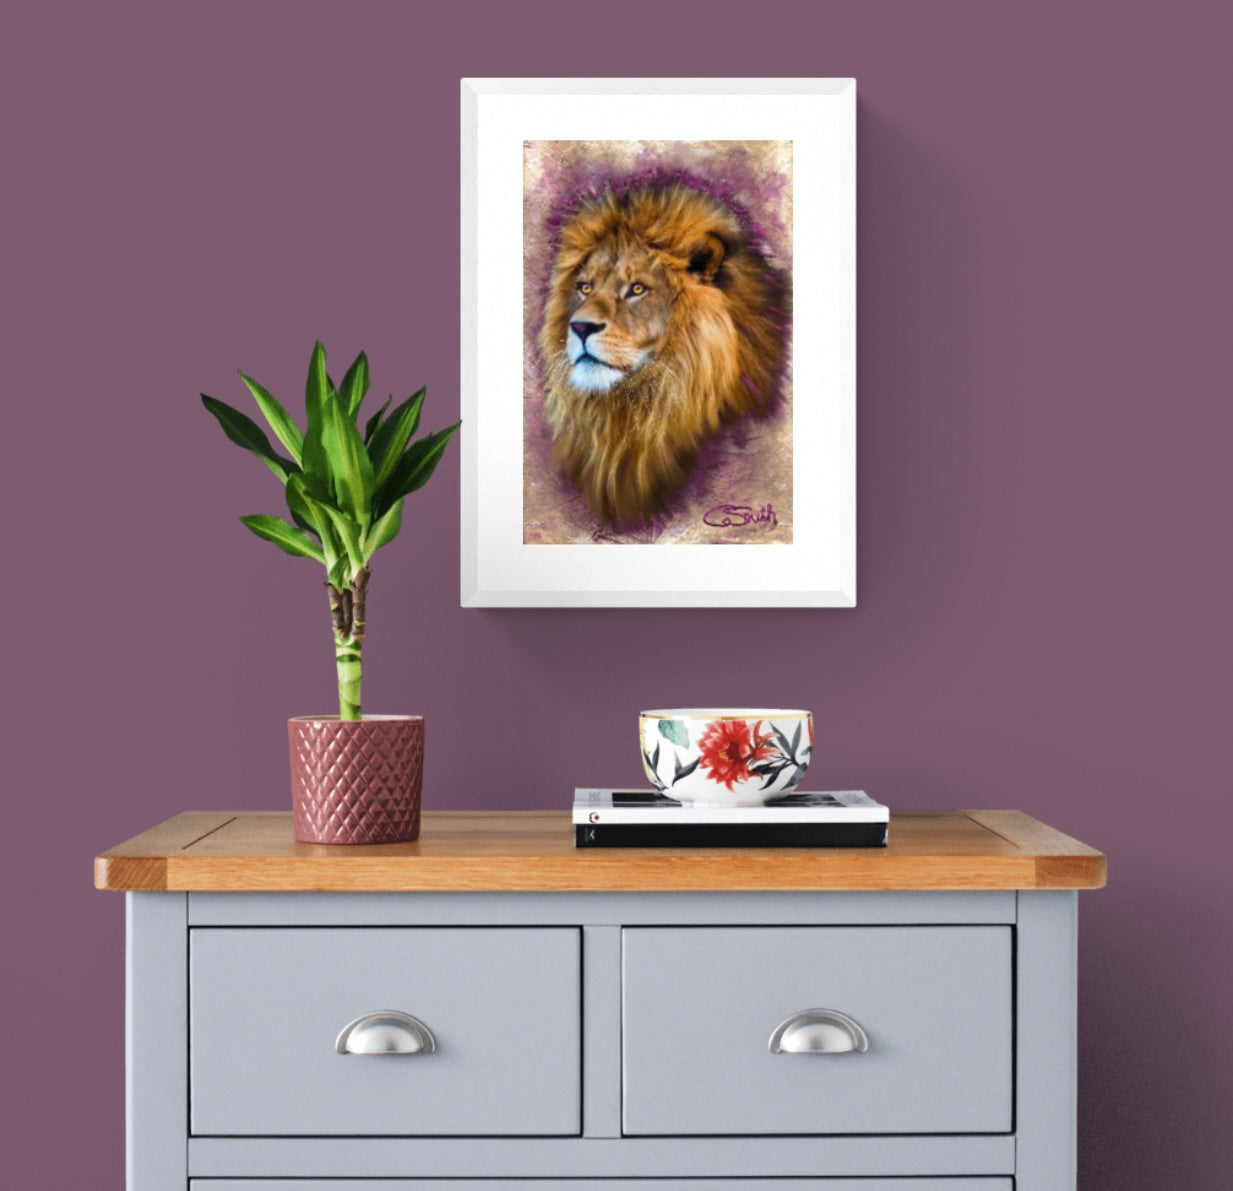 Wildlife Wild Animal Art Lion Framed Print 14" x 11" (Matte Black or White Frame) Gift Idea